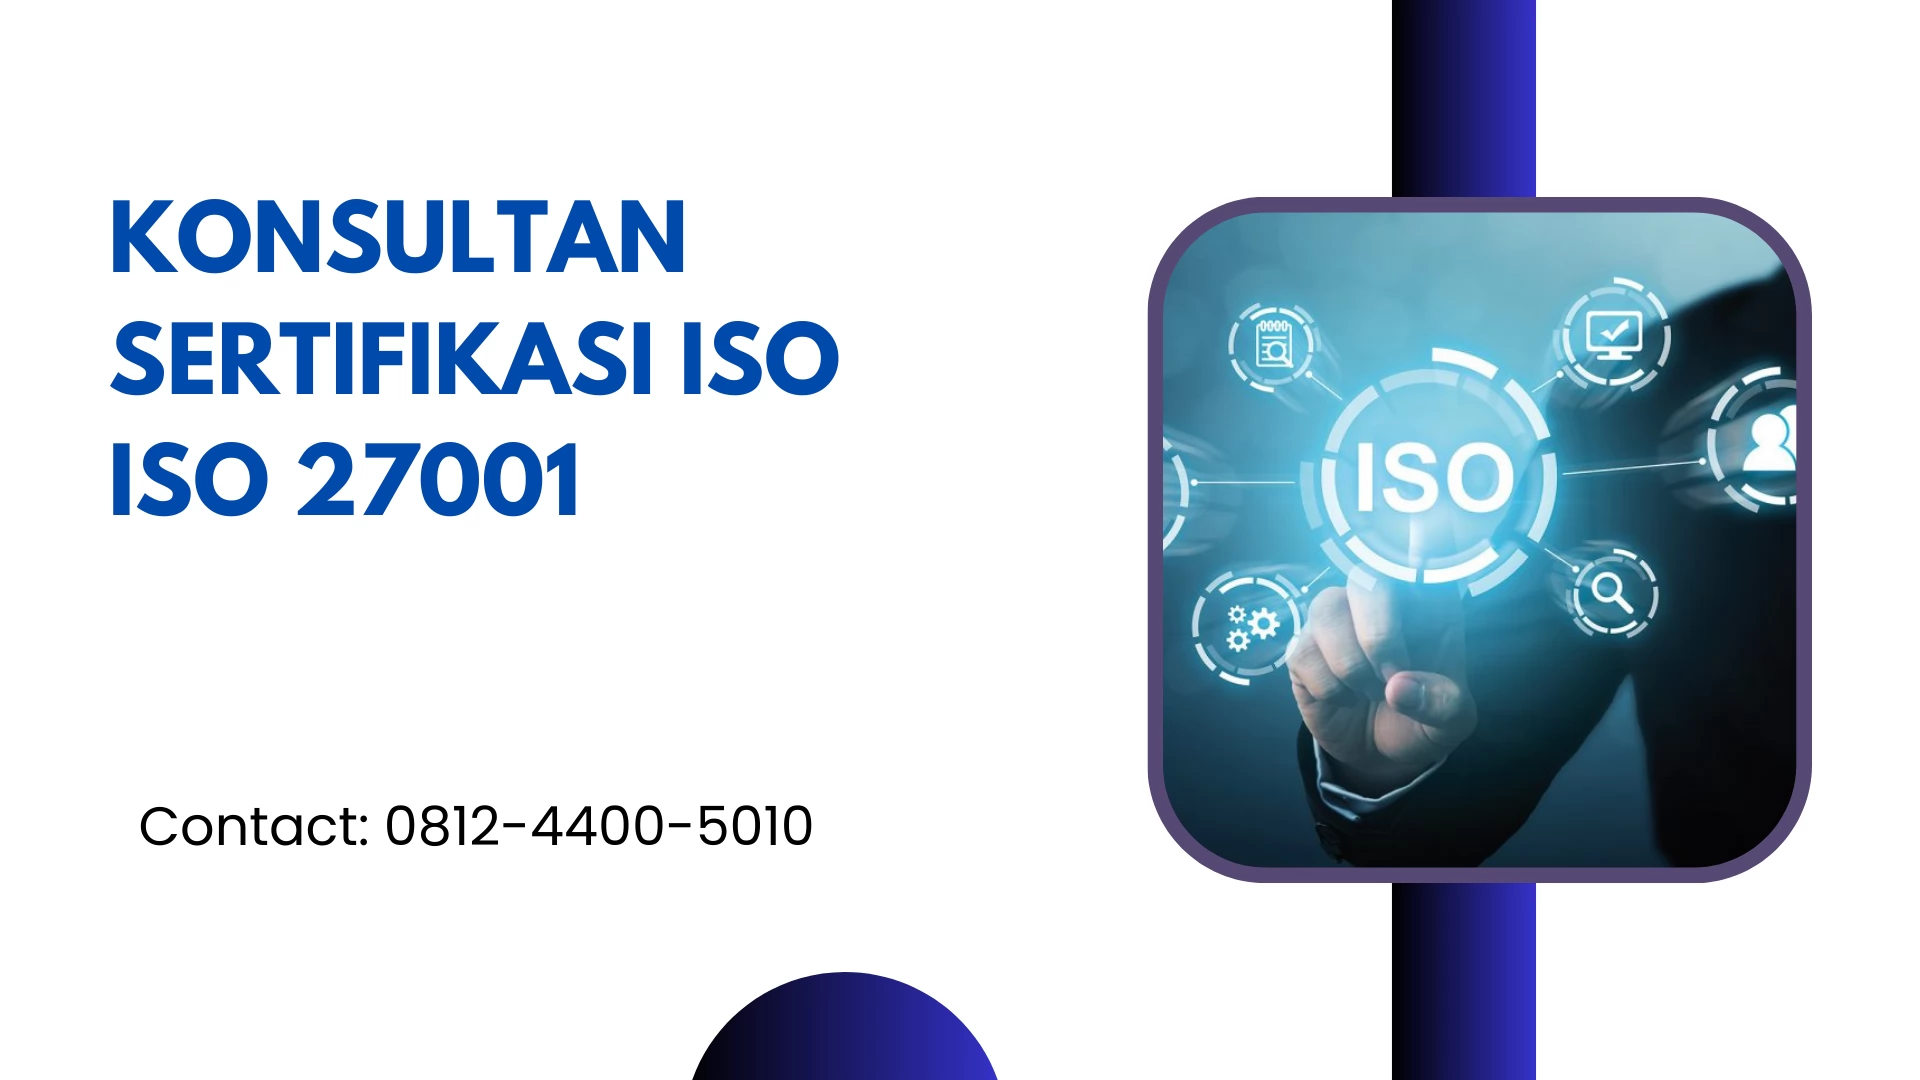 Konsultan Sertifikasi ISO ISO 27001